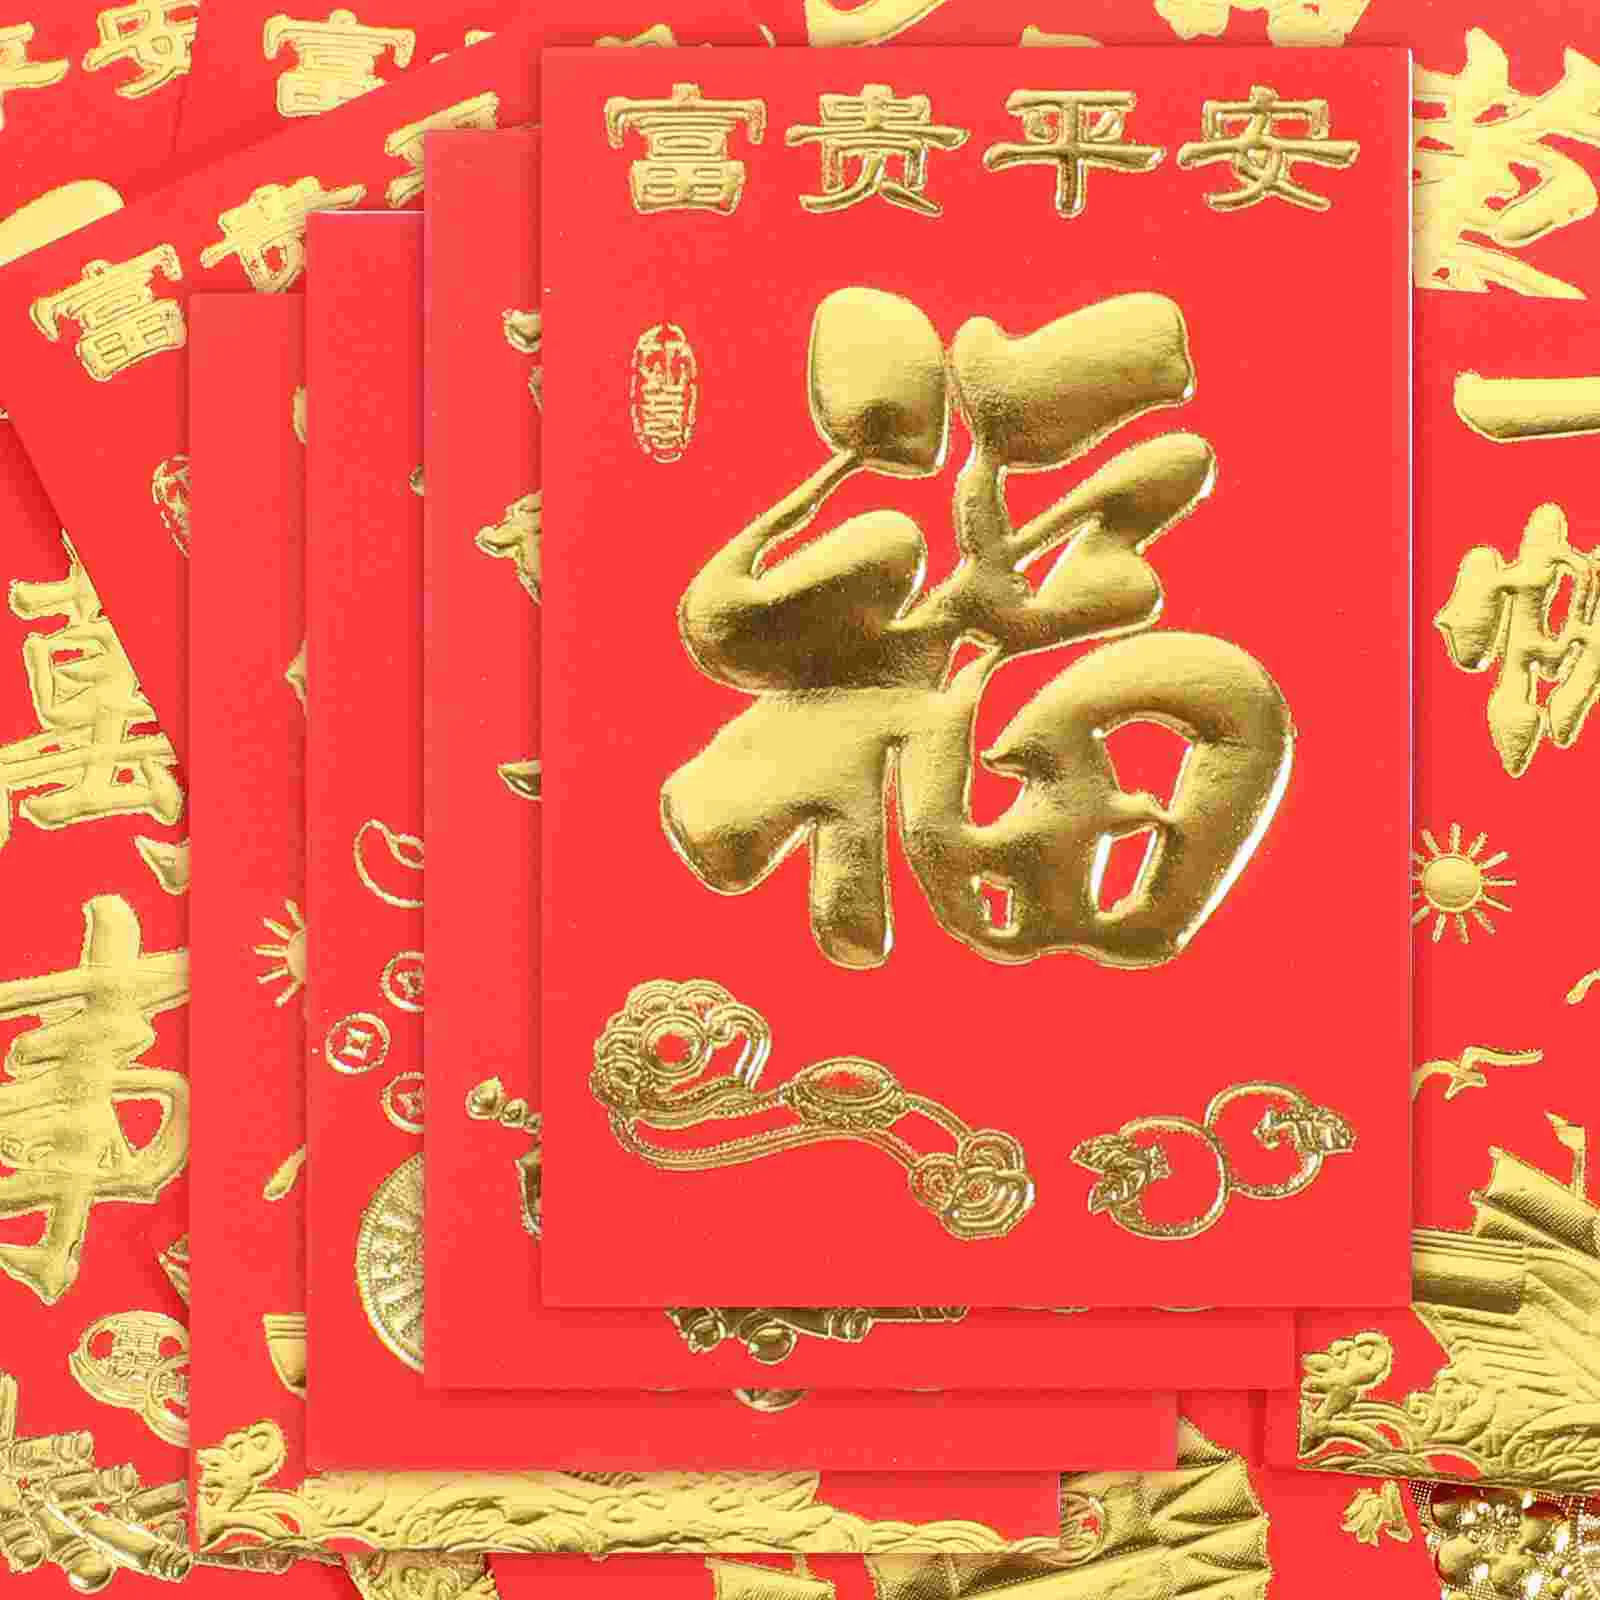 160Pcs Hiina Uue Aasta Punased Ümbrikud Kevadel HongBao Raha Tasku Paber-Punane Pakettaknad Spring Festival Raha kotti Draakon